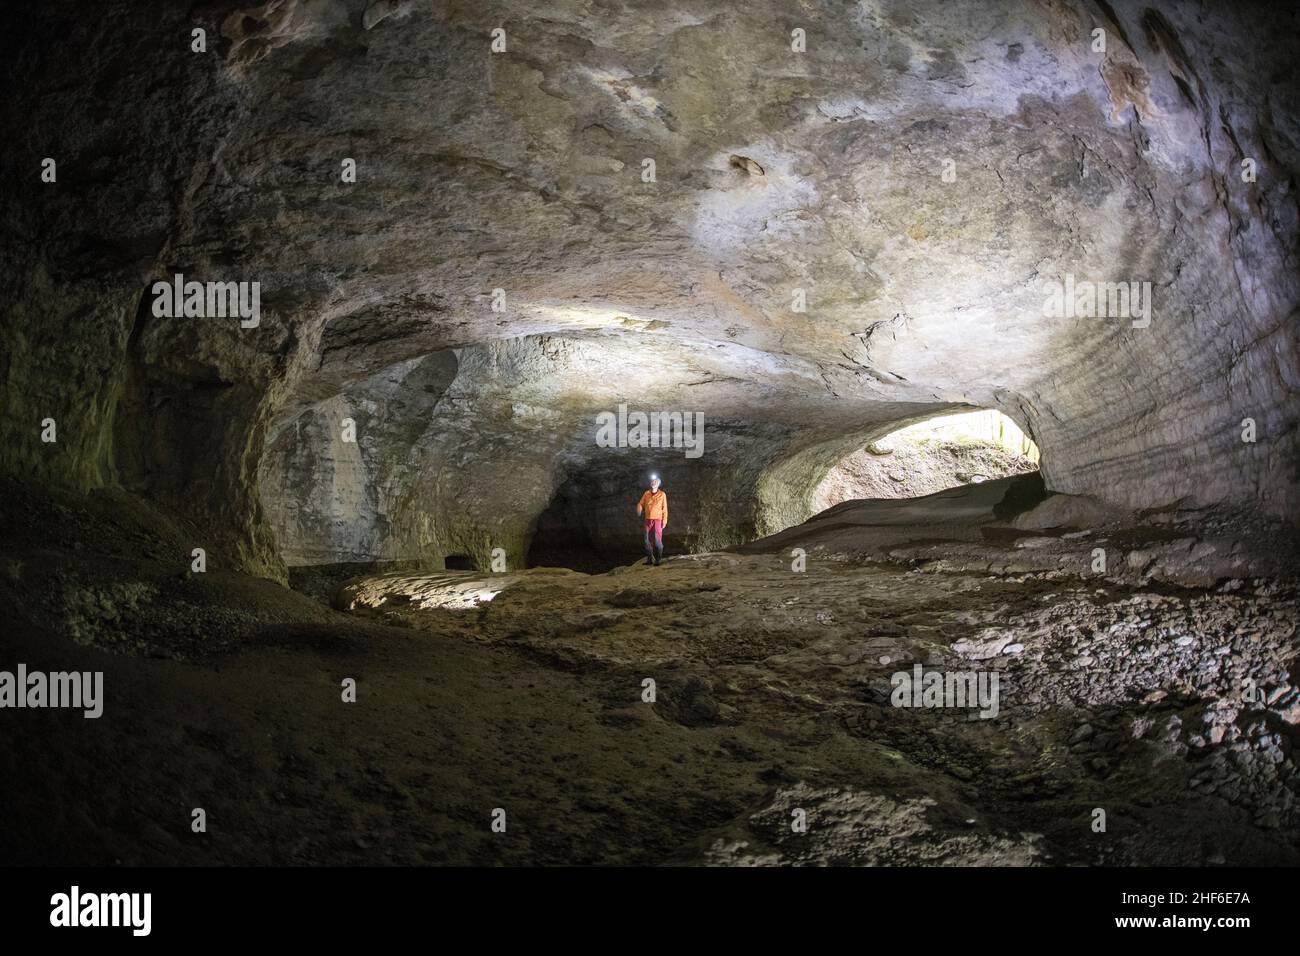 Grotta di stalattiti in Francia, Grotte di Plaisir Fontaine Foto Stock